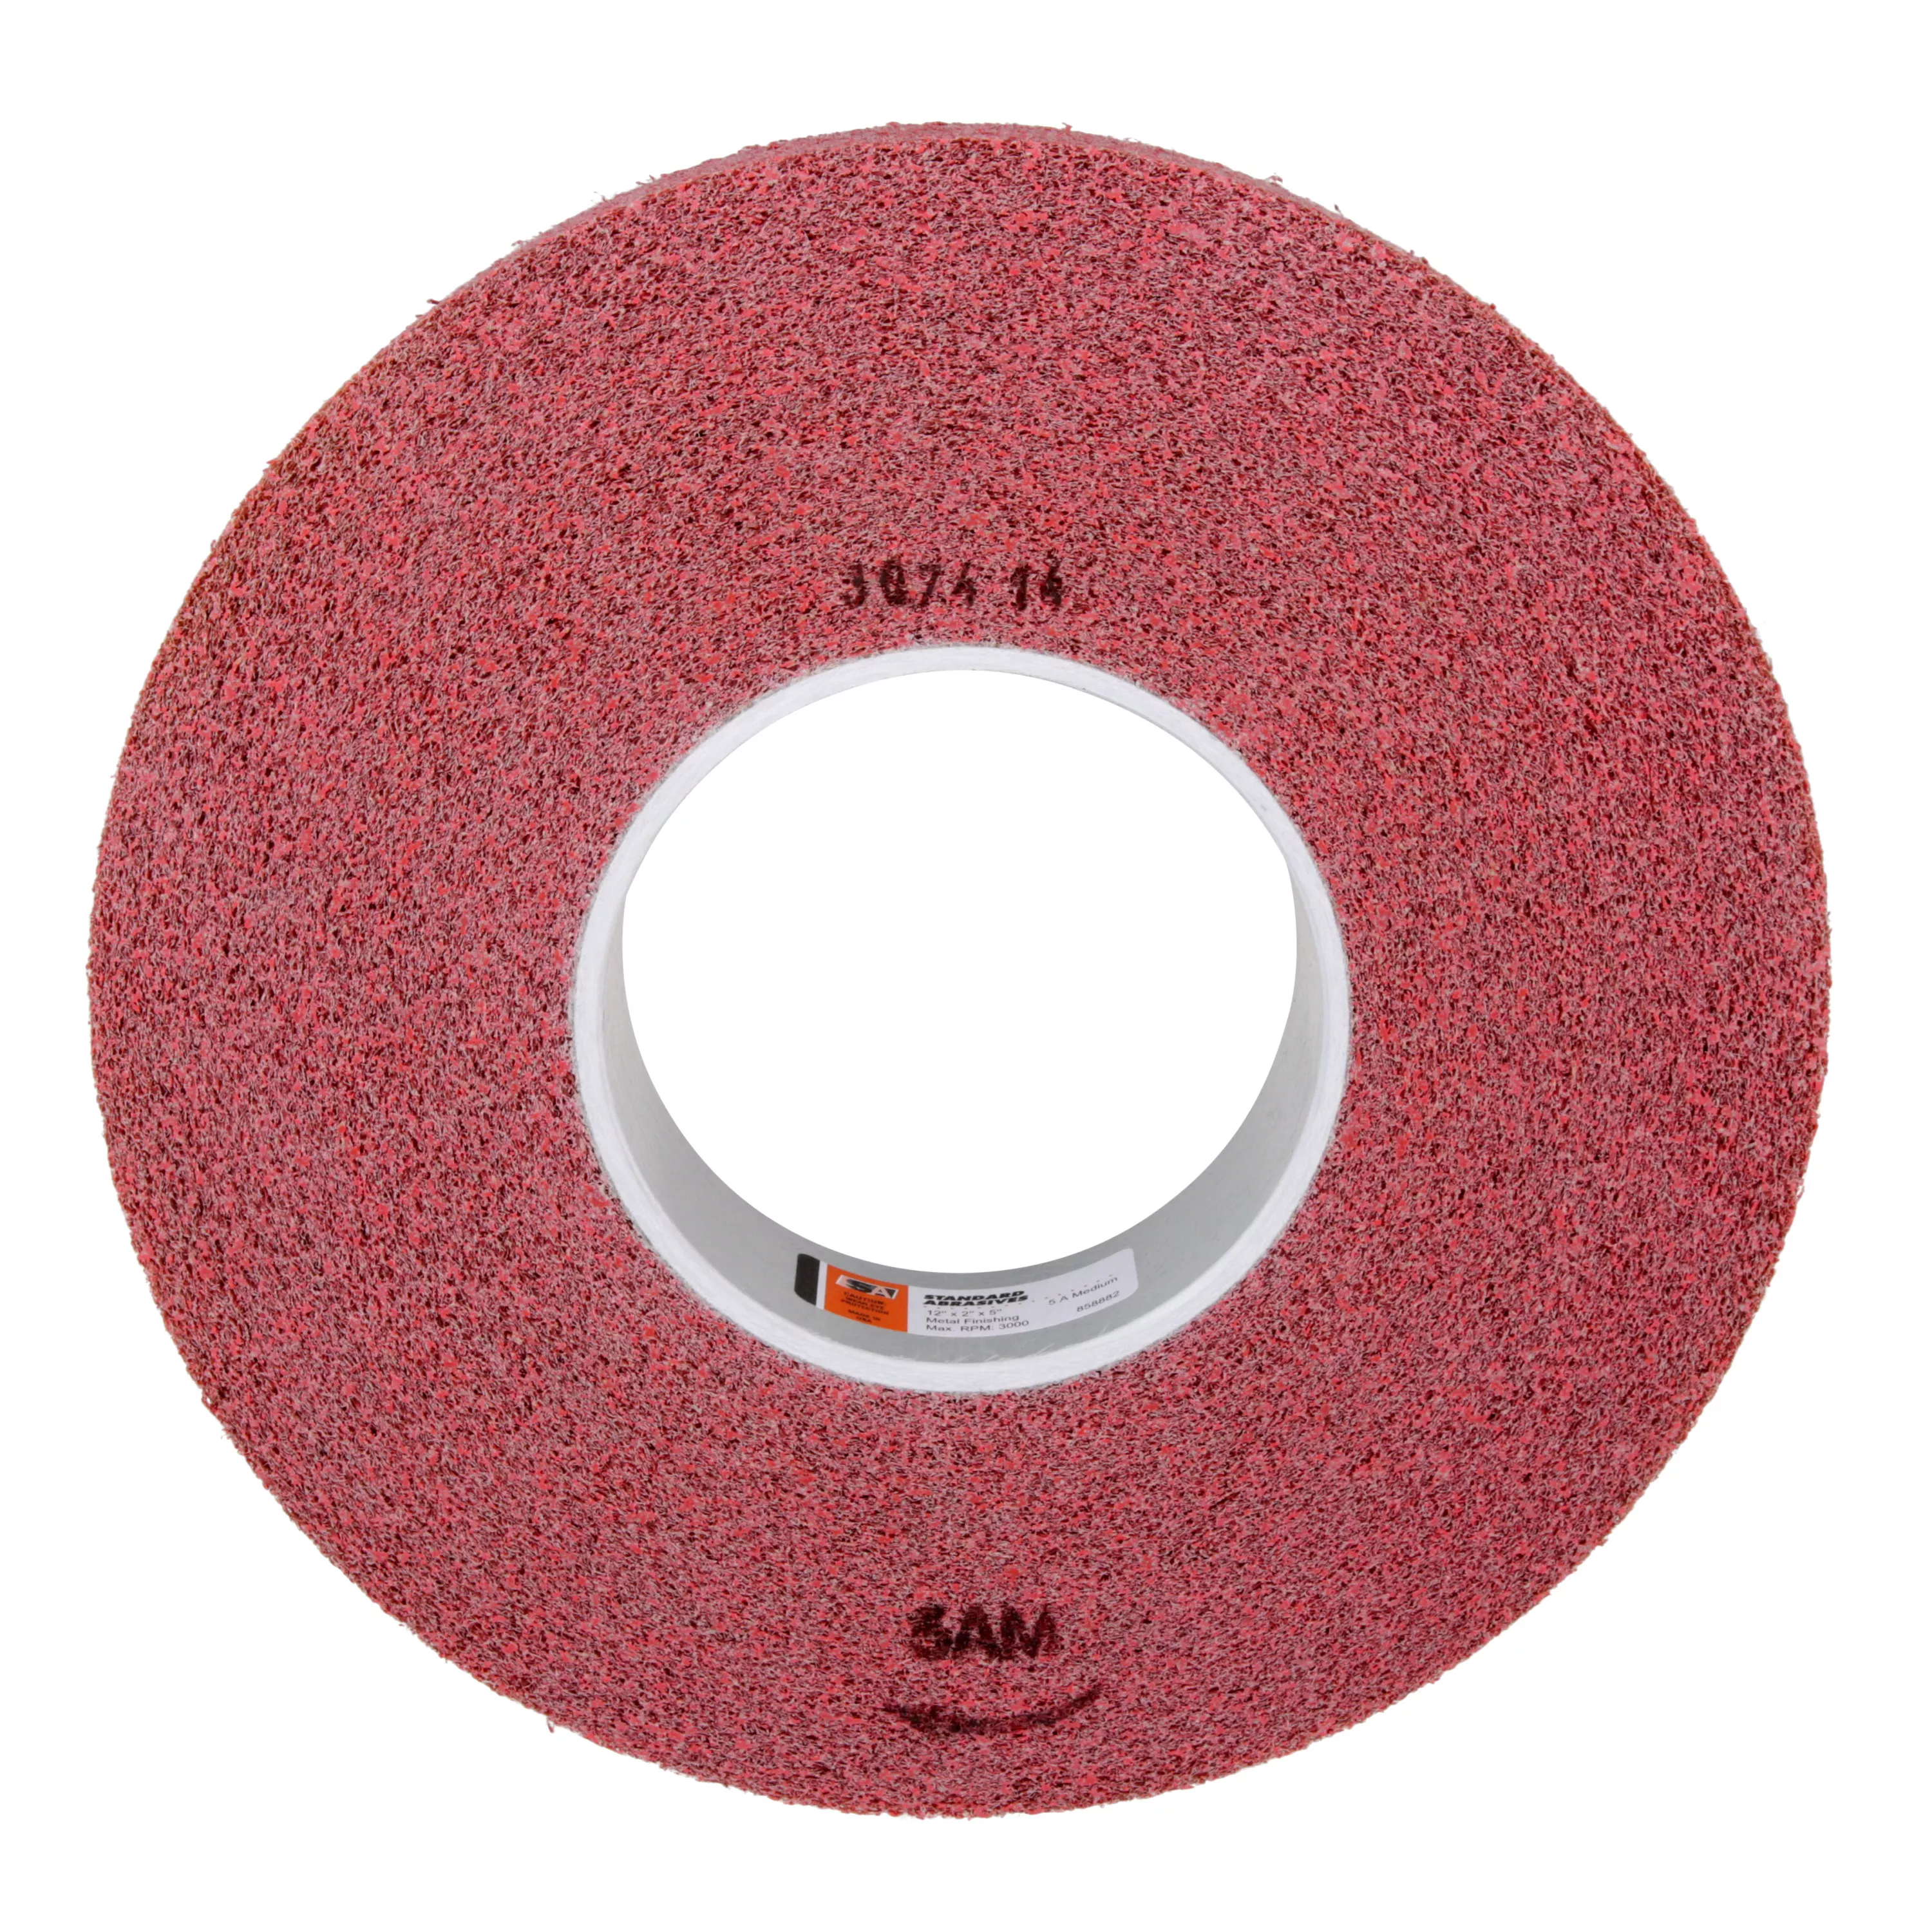 Standard Abrasives™ Metal Finishing Wheel 858882, 12 in x 2 in x 5 in 5A
MED, 1 ea/Case